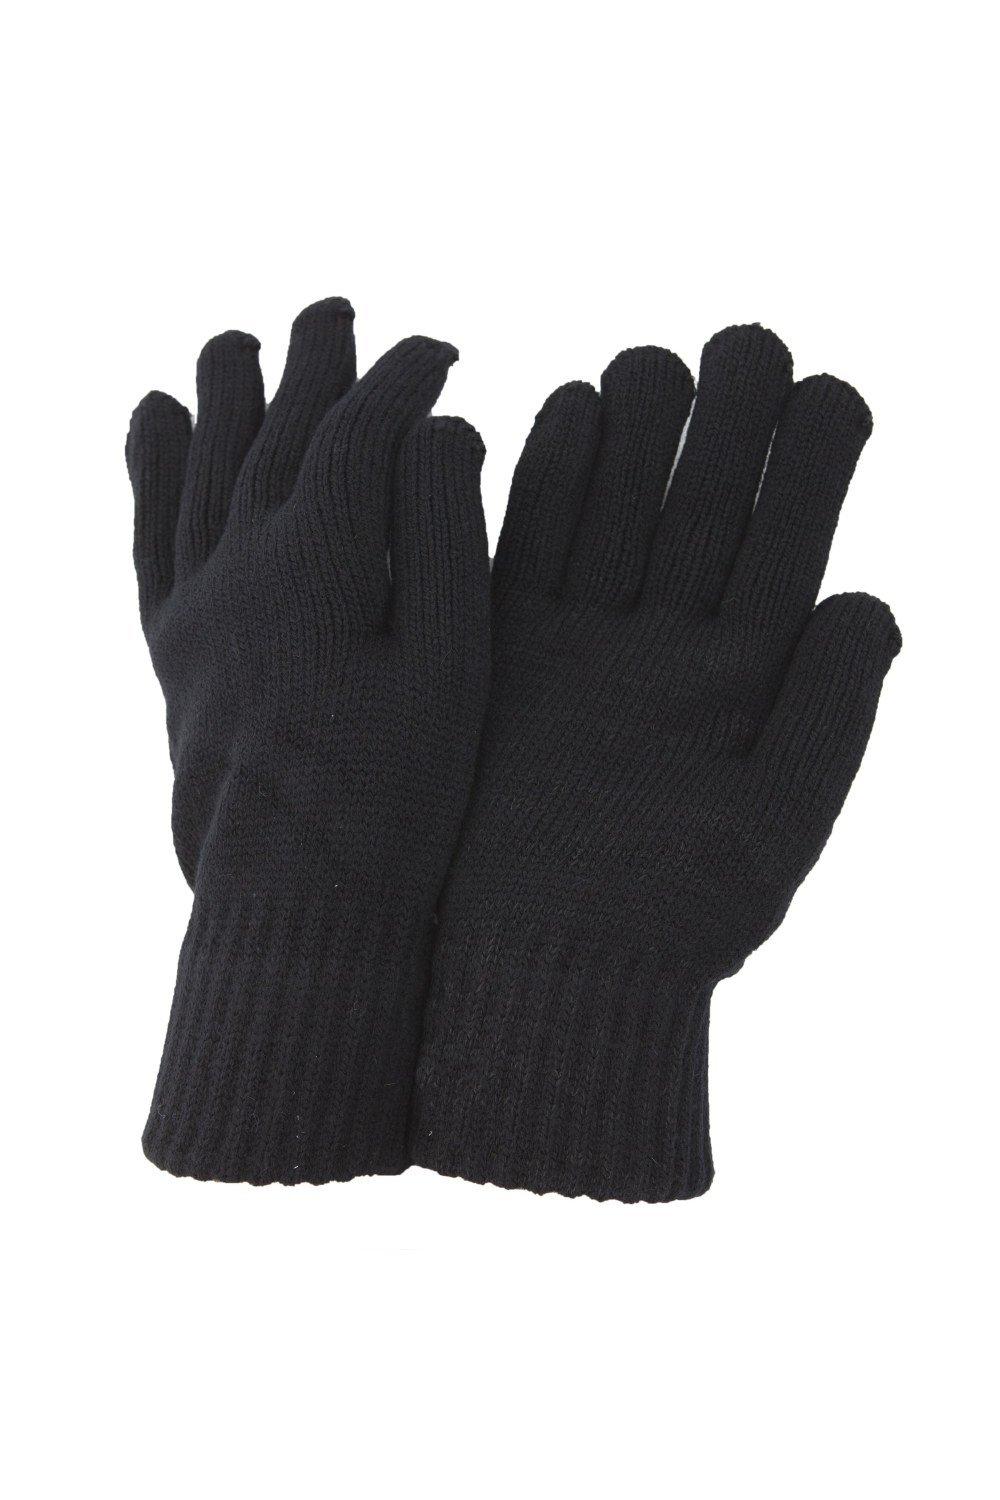 РАСПРОДАЖА - Термовязаные зимние перчатки Universal Textiles, черный распродажа термовязаные зимние перчатки universal textiles серый